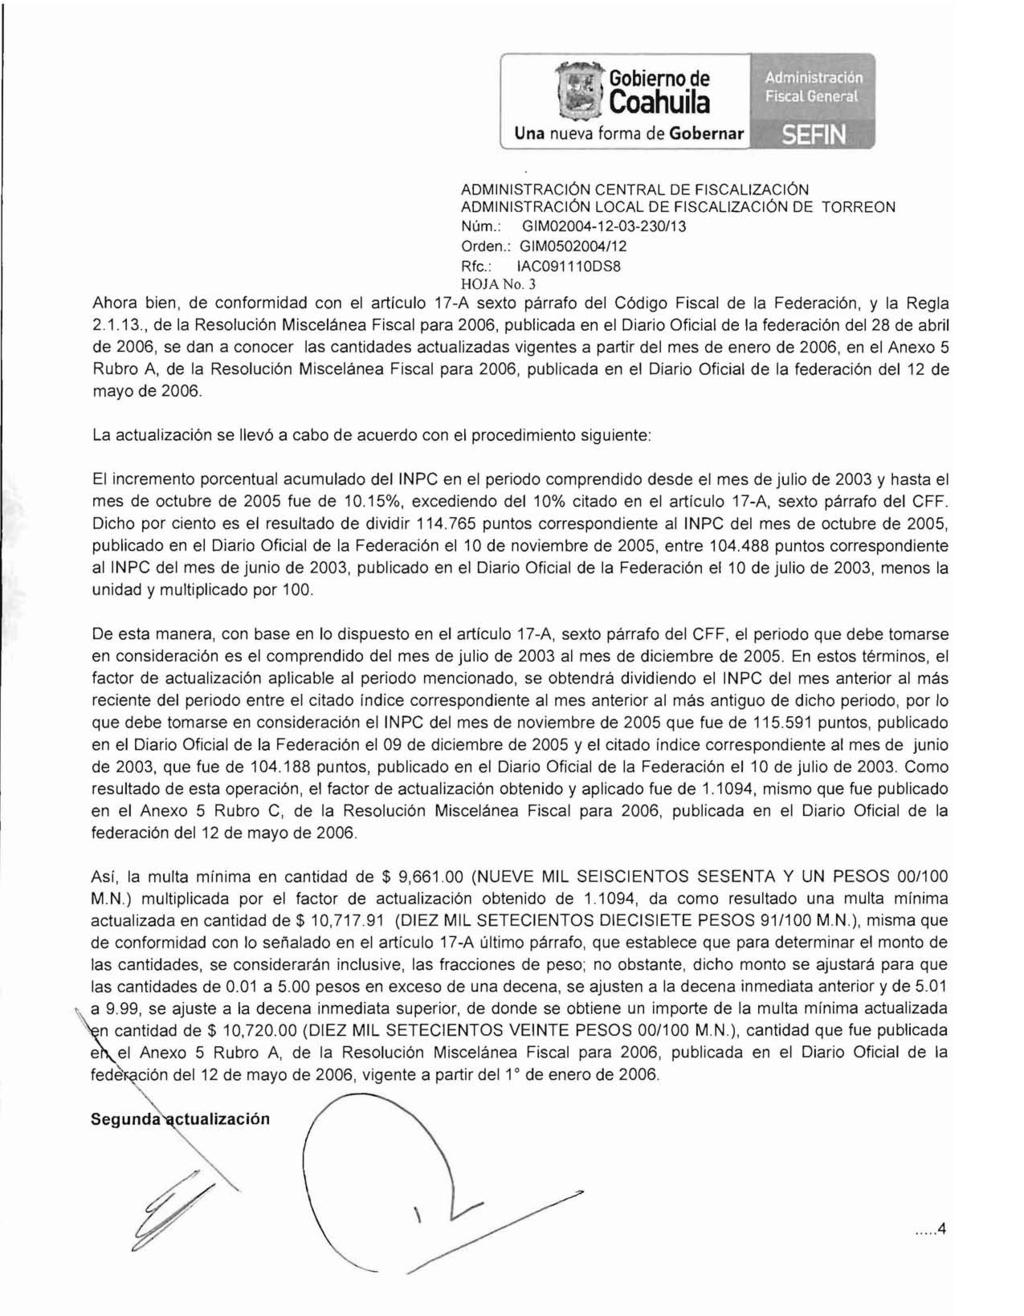 ,," Gobierno de Coahuila ADMINISTRACiÓN LOCAL DE FISCALIZACiÓN DE TORREON Rfe.: IAC091110DS8 HOJA No.